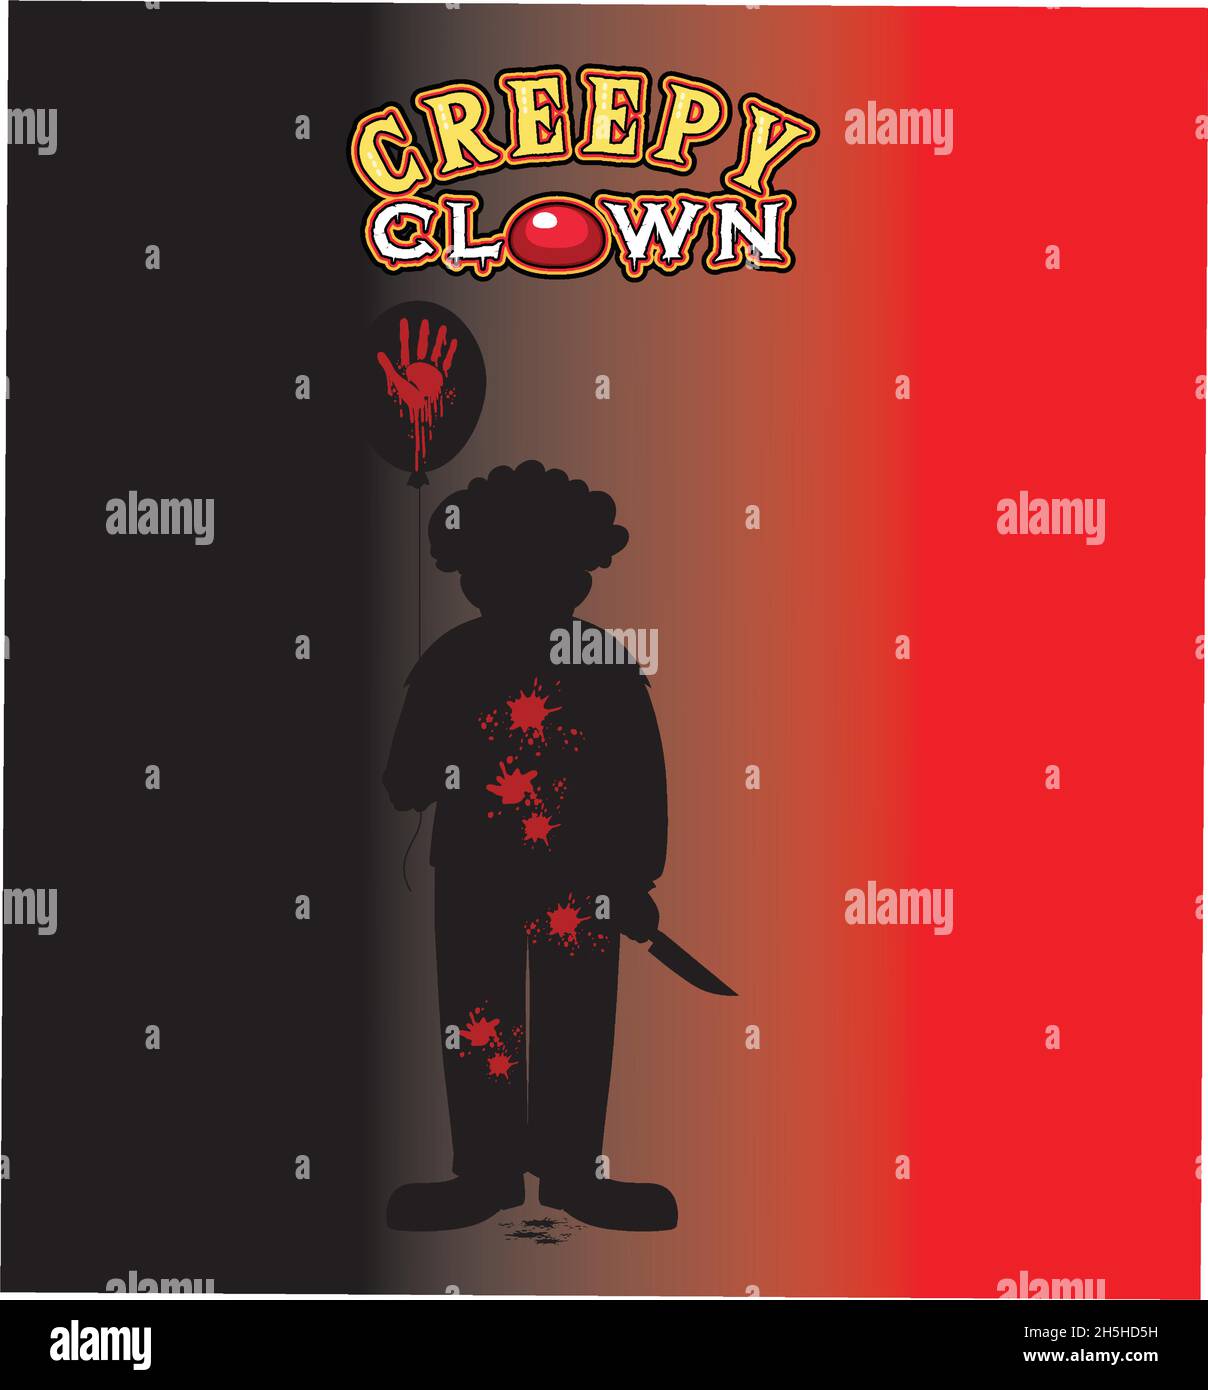 Affiche créepy Clown avec illustration de silhouette clown Illustration de Vecteur